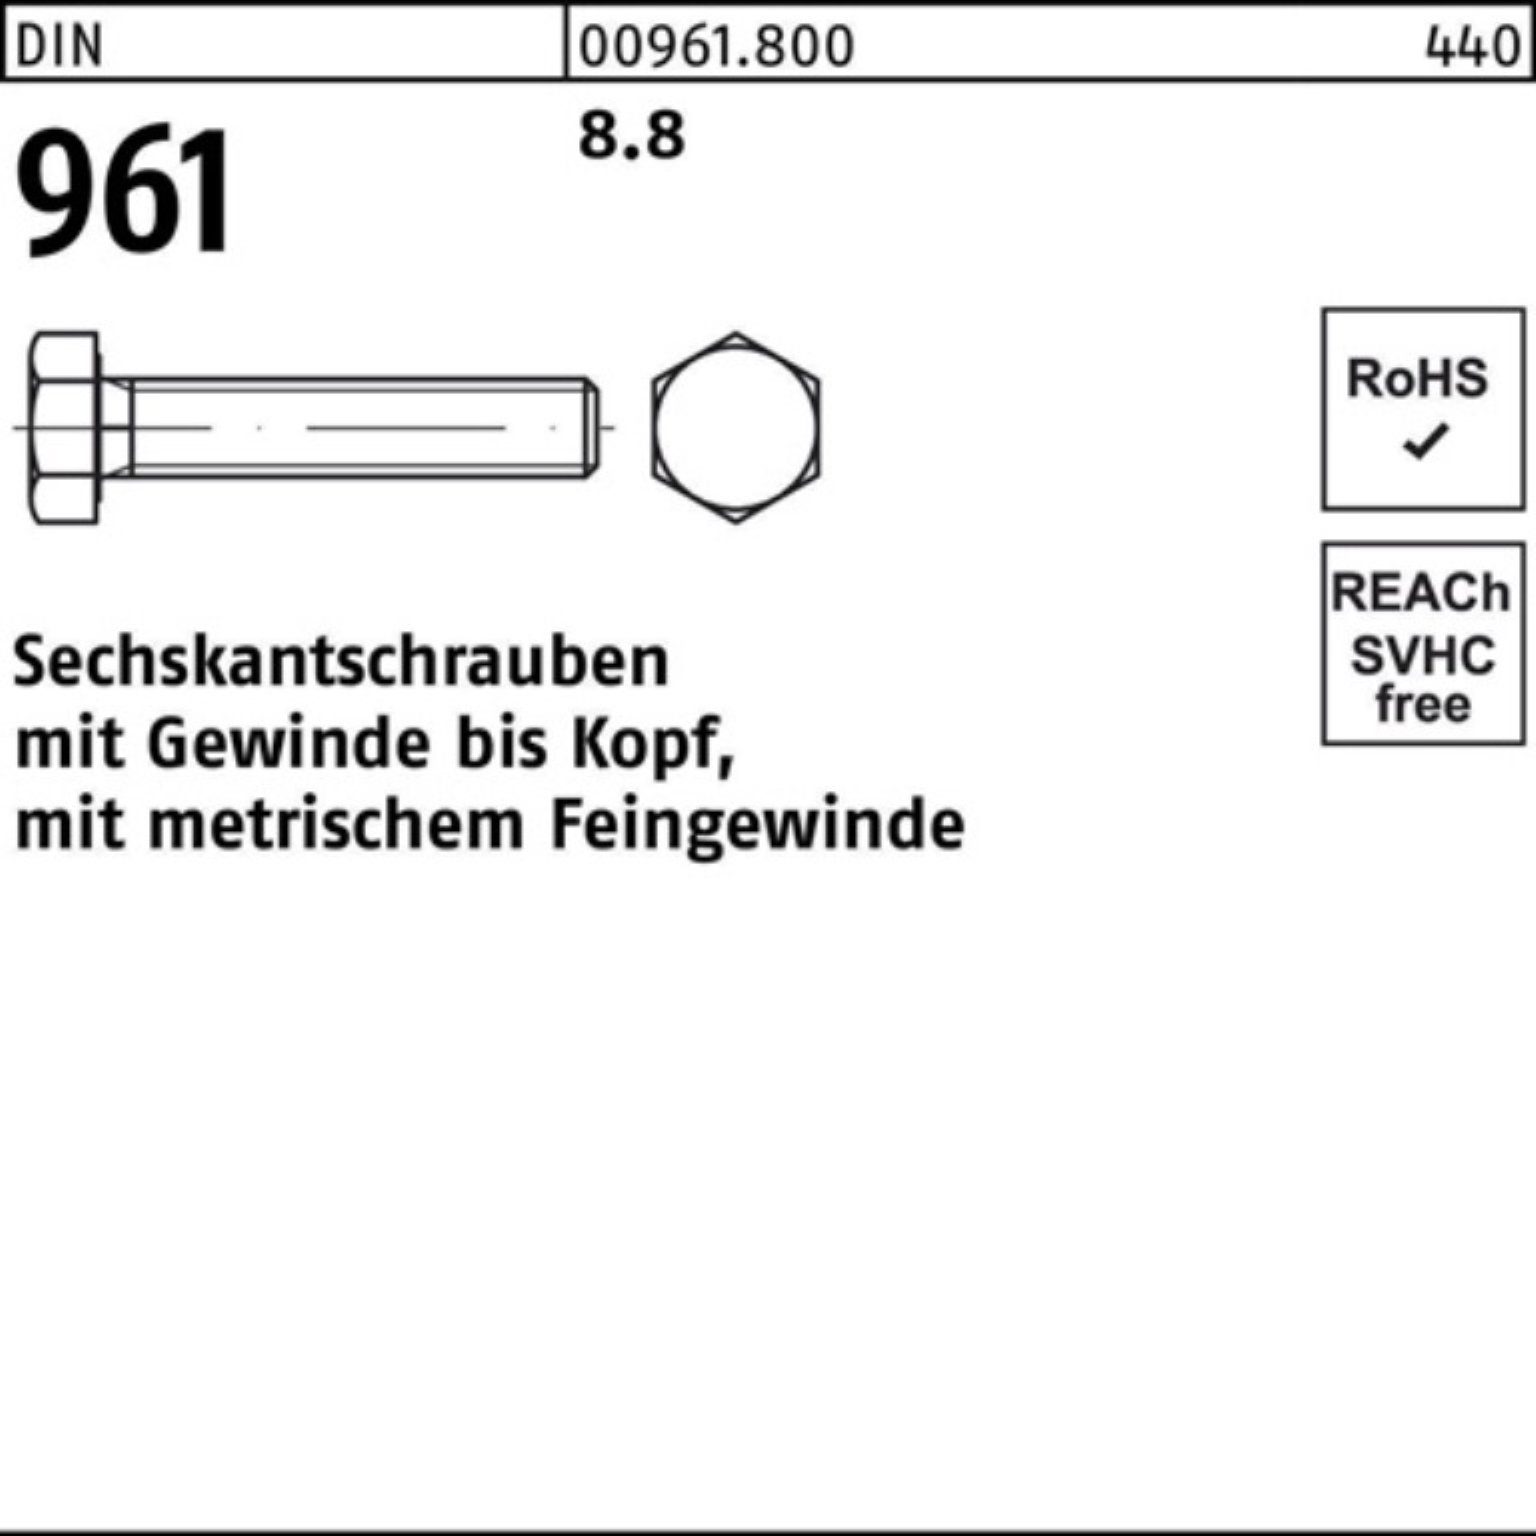 VG 961 961 DIN Sechskantschraube Pack 8.8 100er Stück 1 M30x2x150 Sechskantschraube Reyher DIN